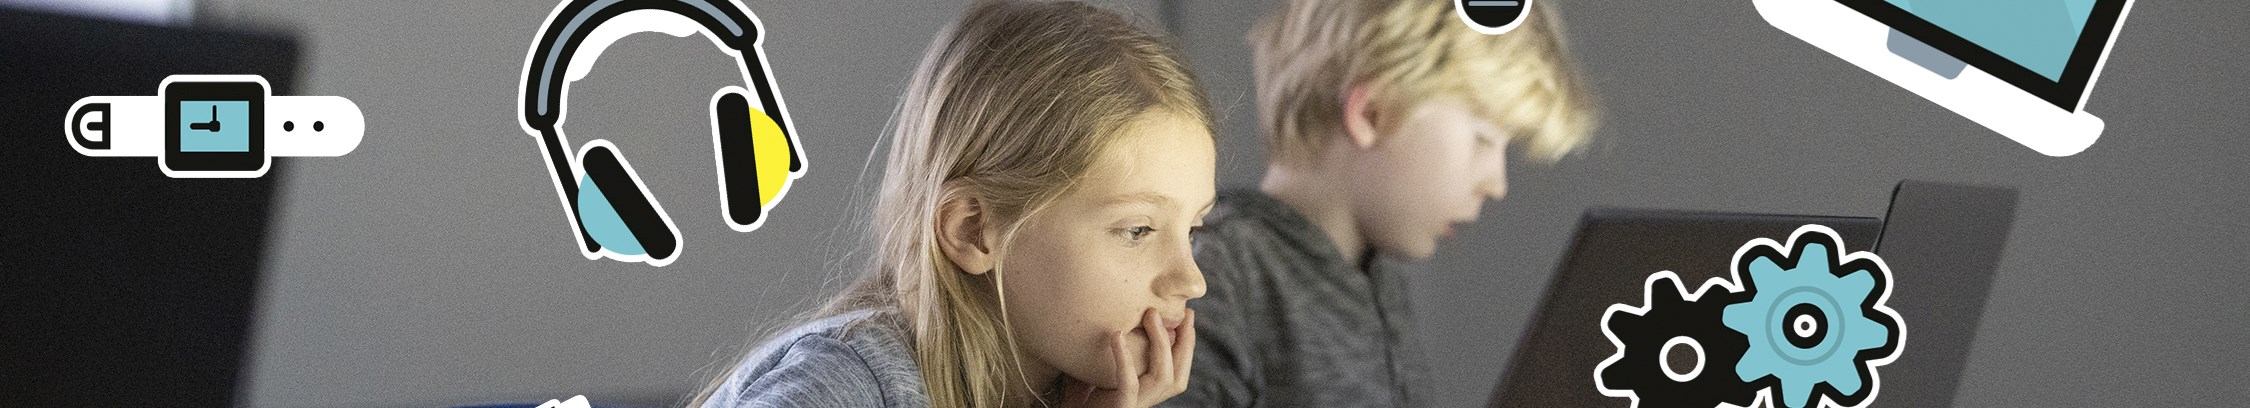 Kodning og It-kurser for børn og unge hos FOF København